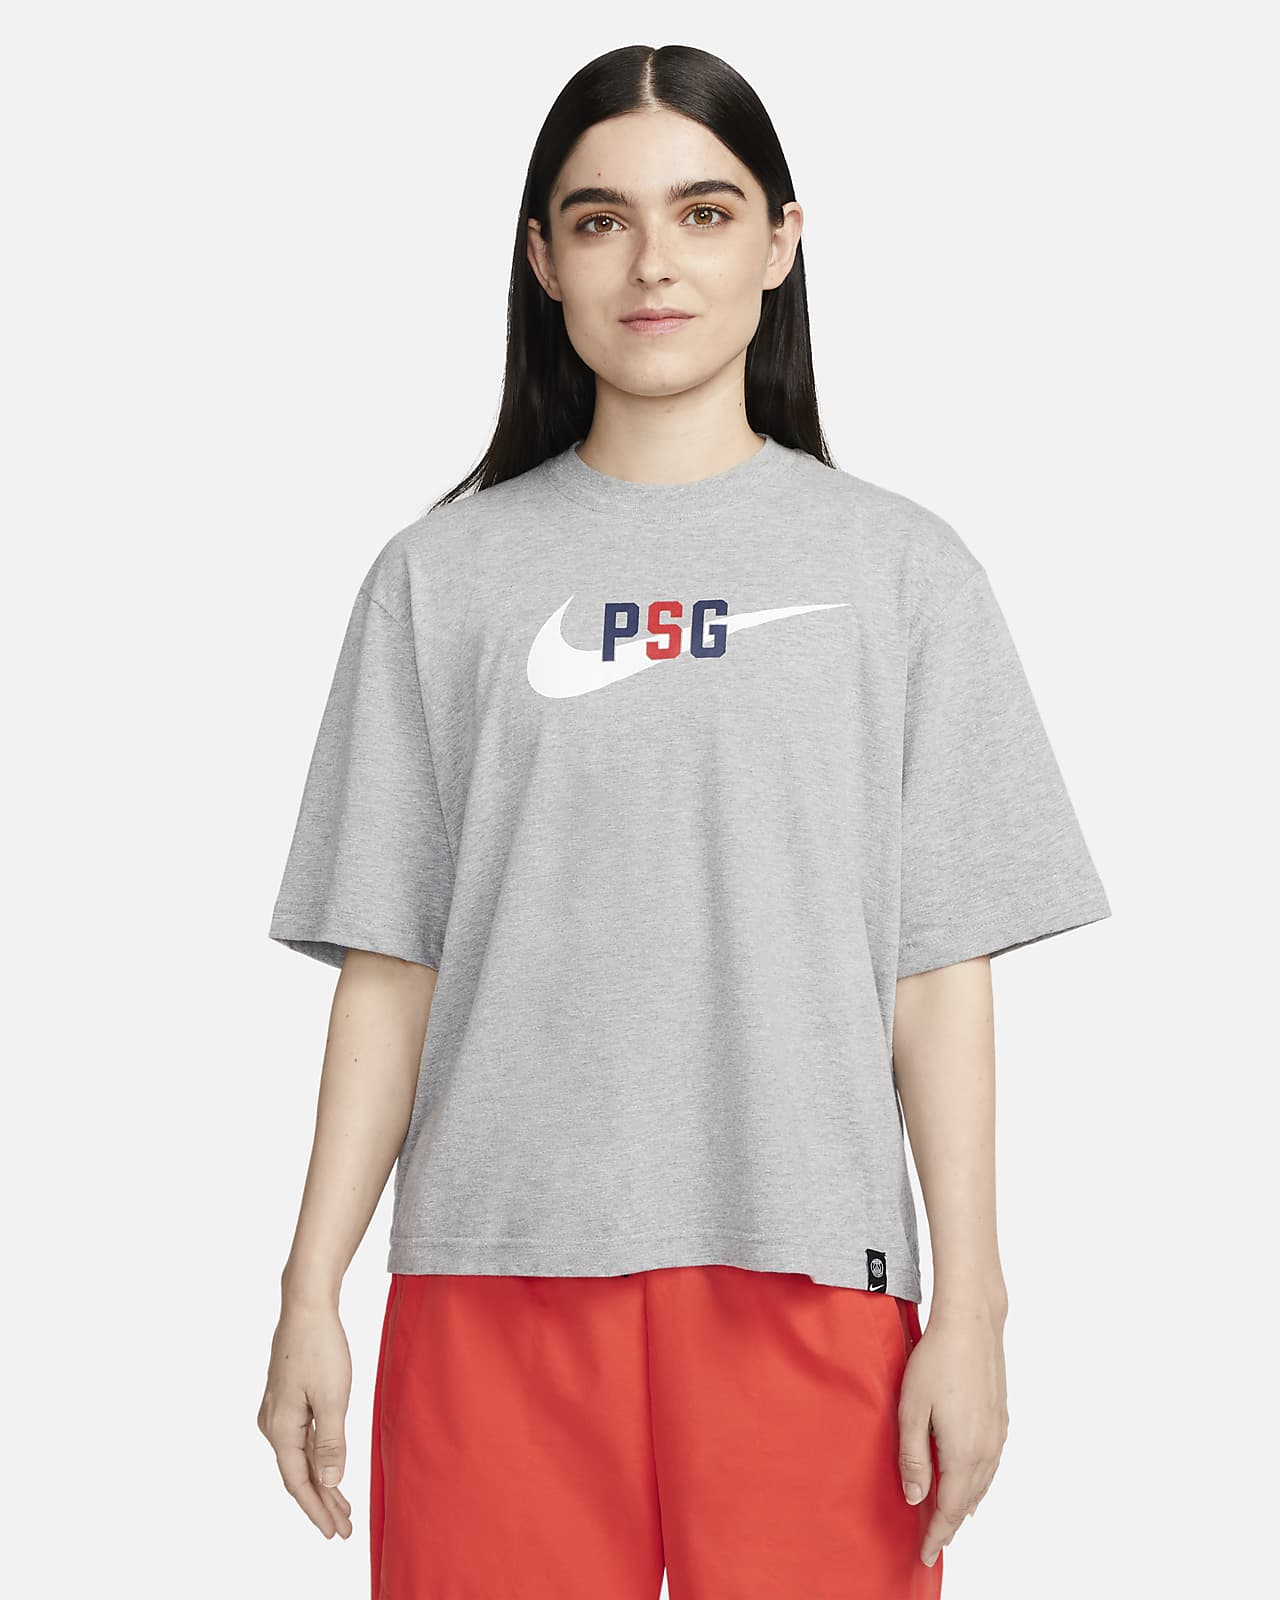 Paris Saint-Germain Swoosh Women's Nike Football T-Shirt